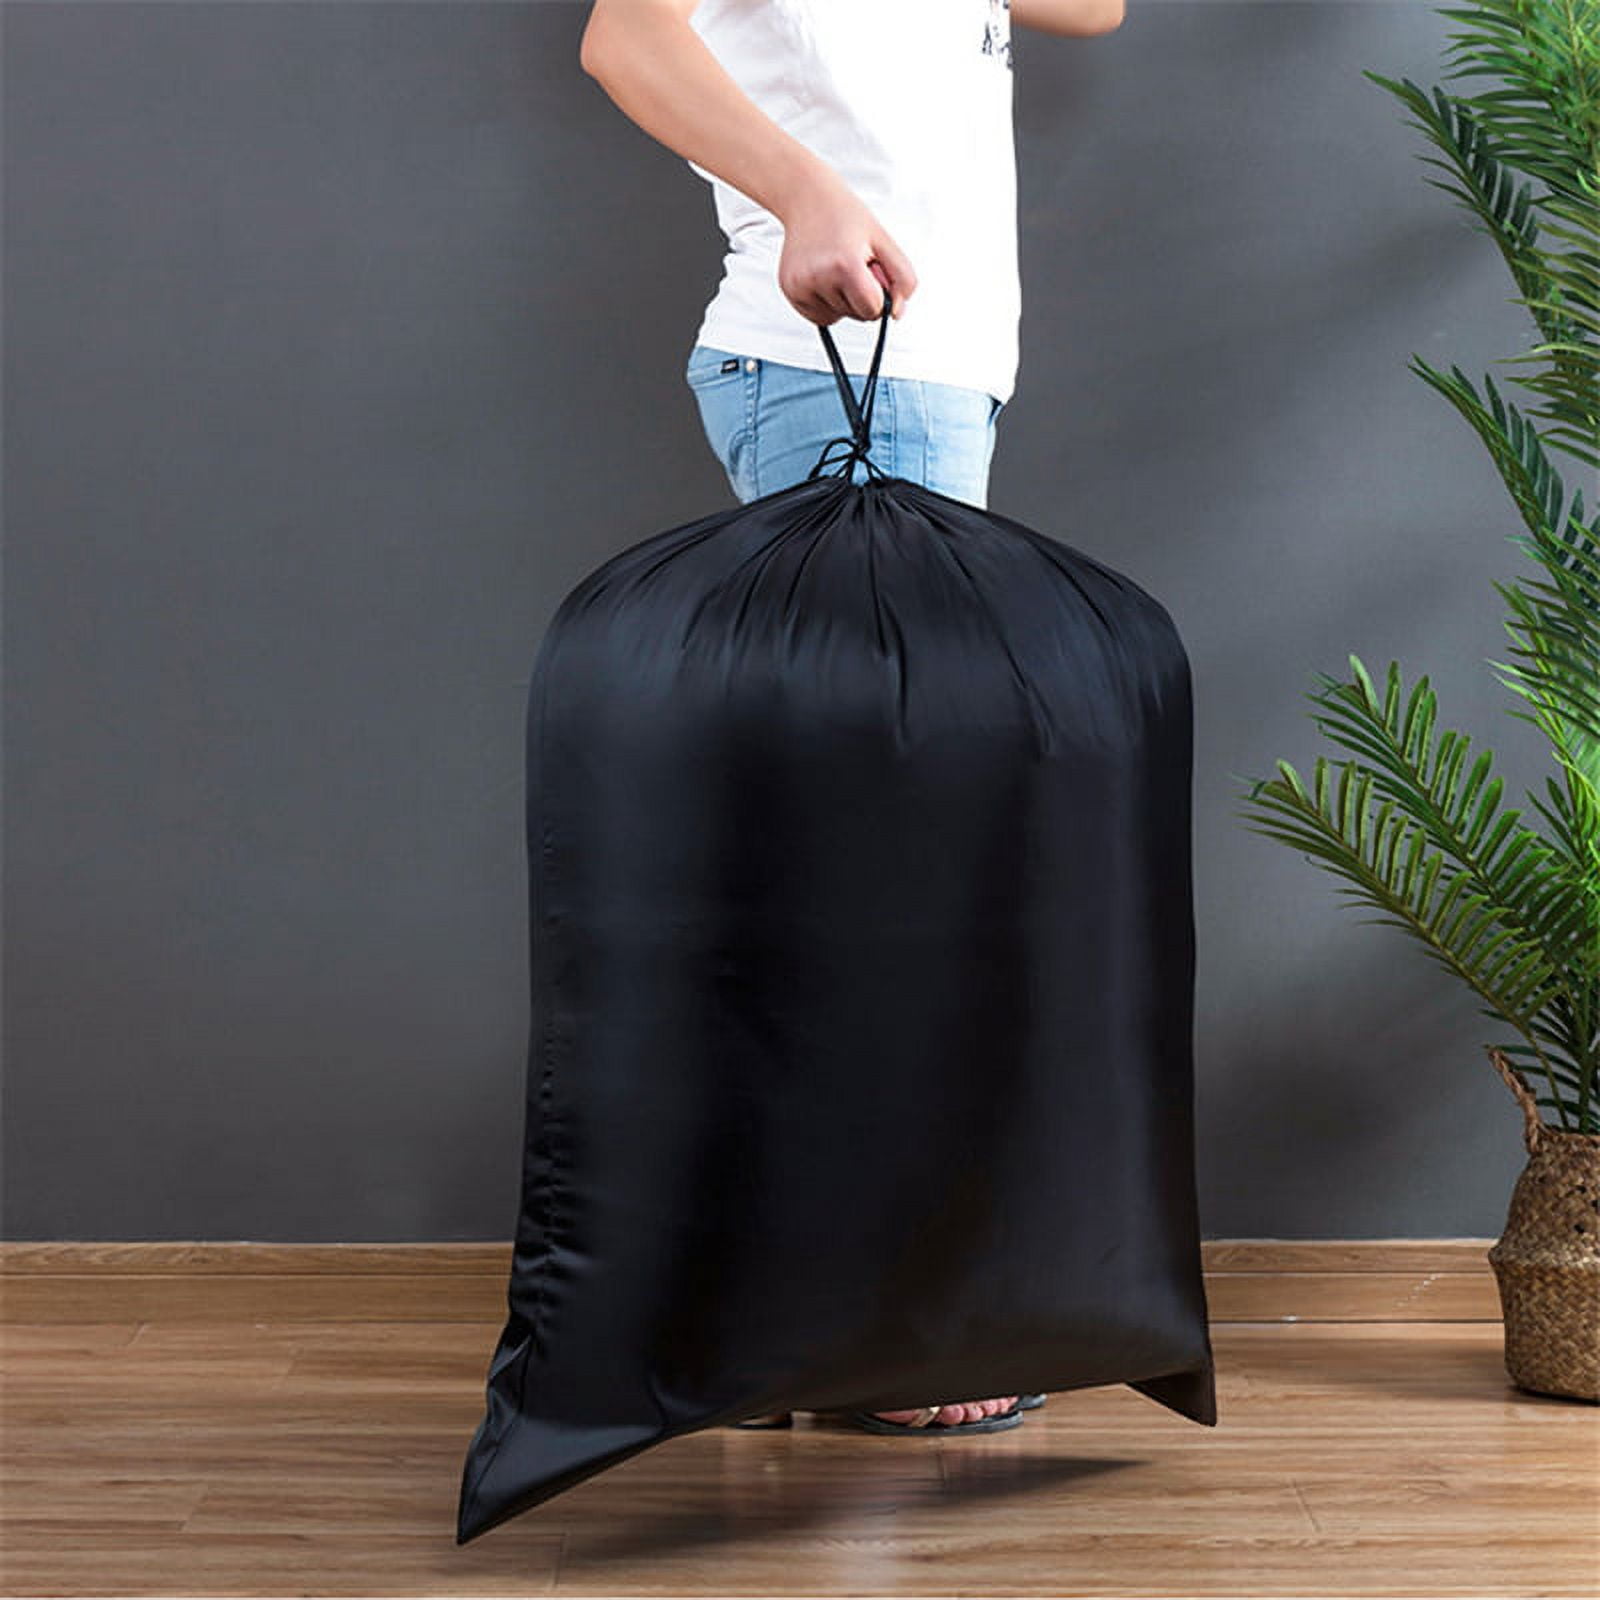 Trademark Home Heavy Duty Jumbo Sized Nylon Laundry Bag, Black